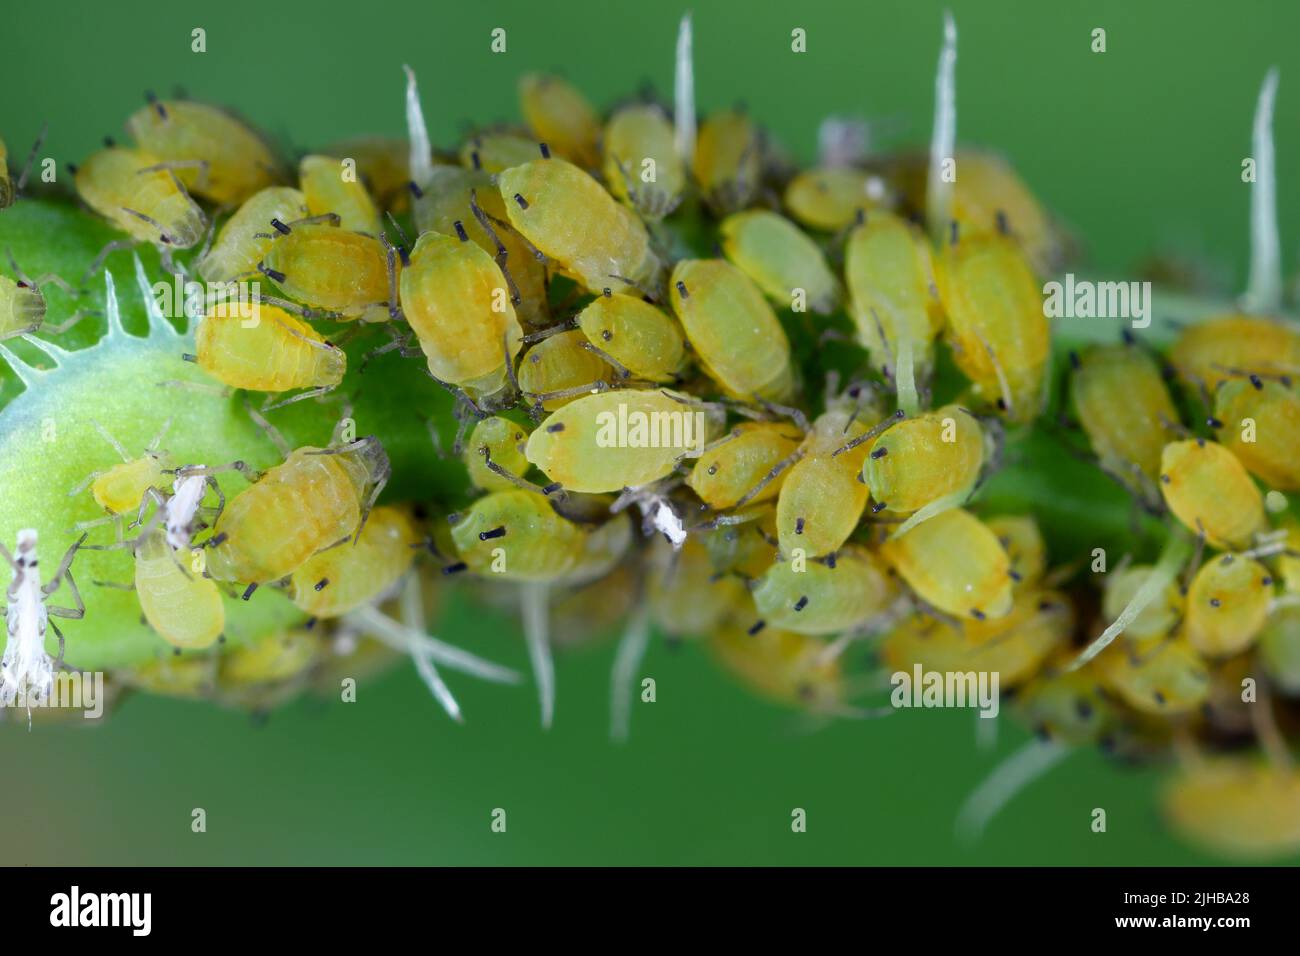 Colonia di apide di cotone (detta anche apide di melone e afide di cotone) Aphis gossypii sulla pianta di Crepis. Foto Stock